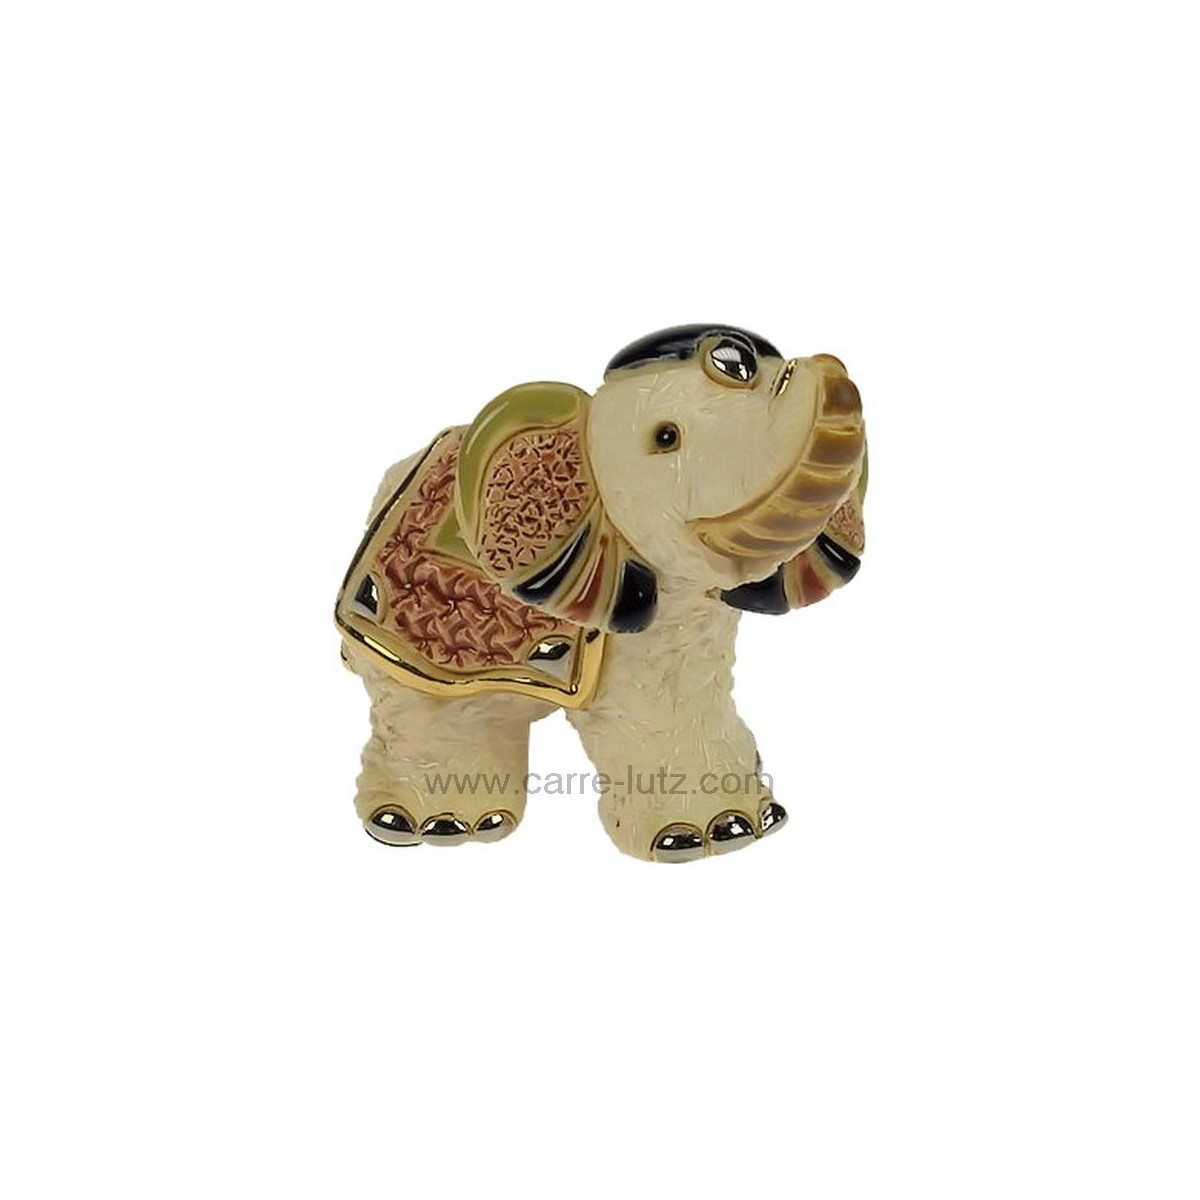 CL47200087  Bébé éléphant indien blanc en céramique platine et or - De Rosa Rinconada 75,40 €